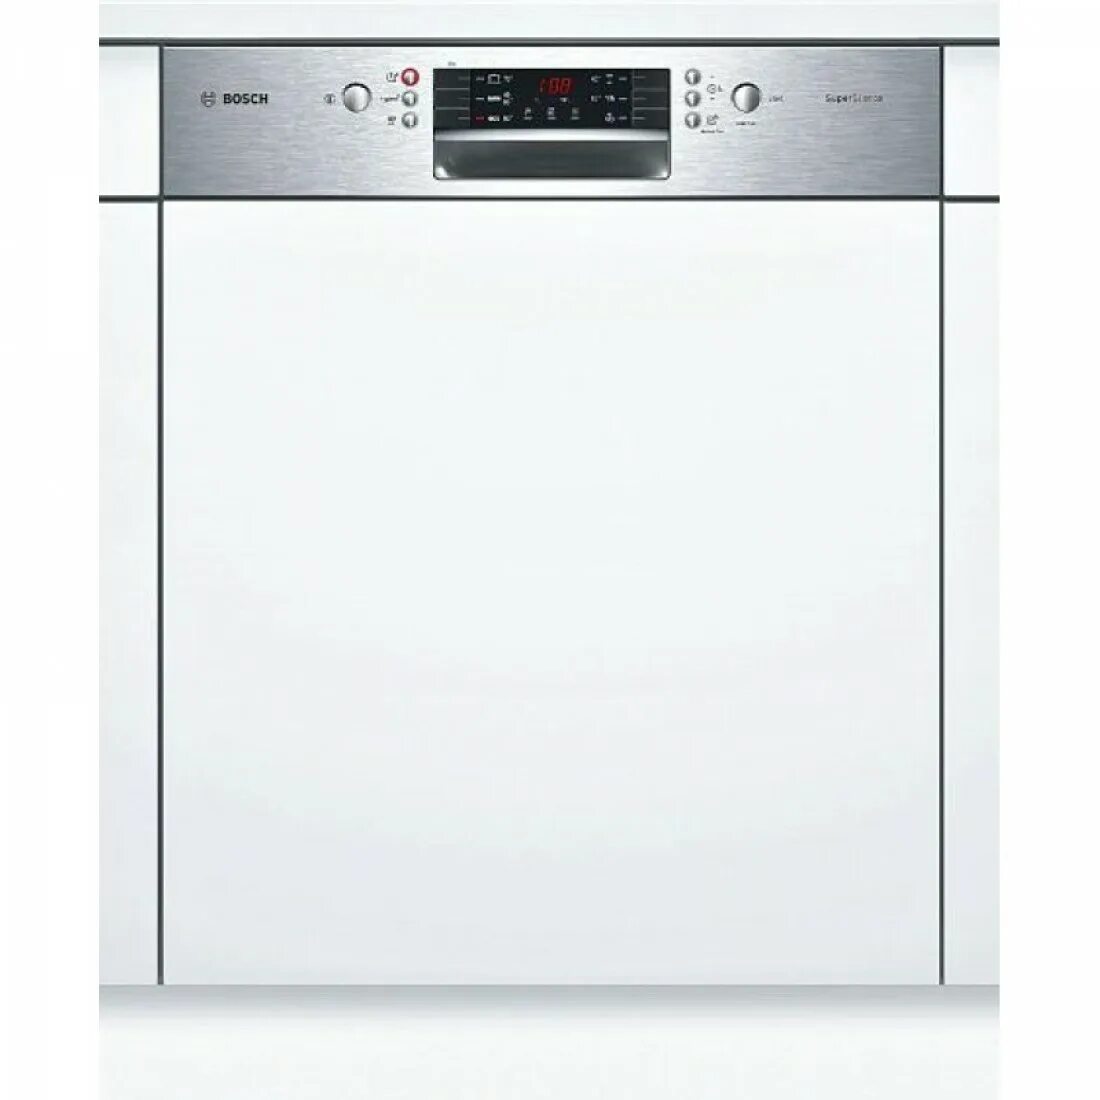 Посудомоечная машина Siemens SN 536s01 ke. Посудомоечная машина Bosch SMI 40m65. Bosch SMI 46ks00 t. Посудомоечная машина Bosch SMI 46ks01 e. Купить посудомоечную машину 60 см встраиваемая bosch